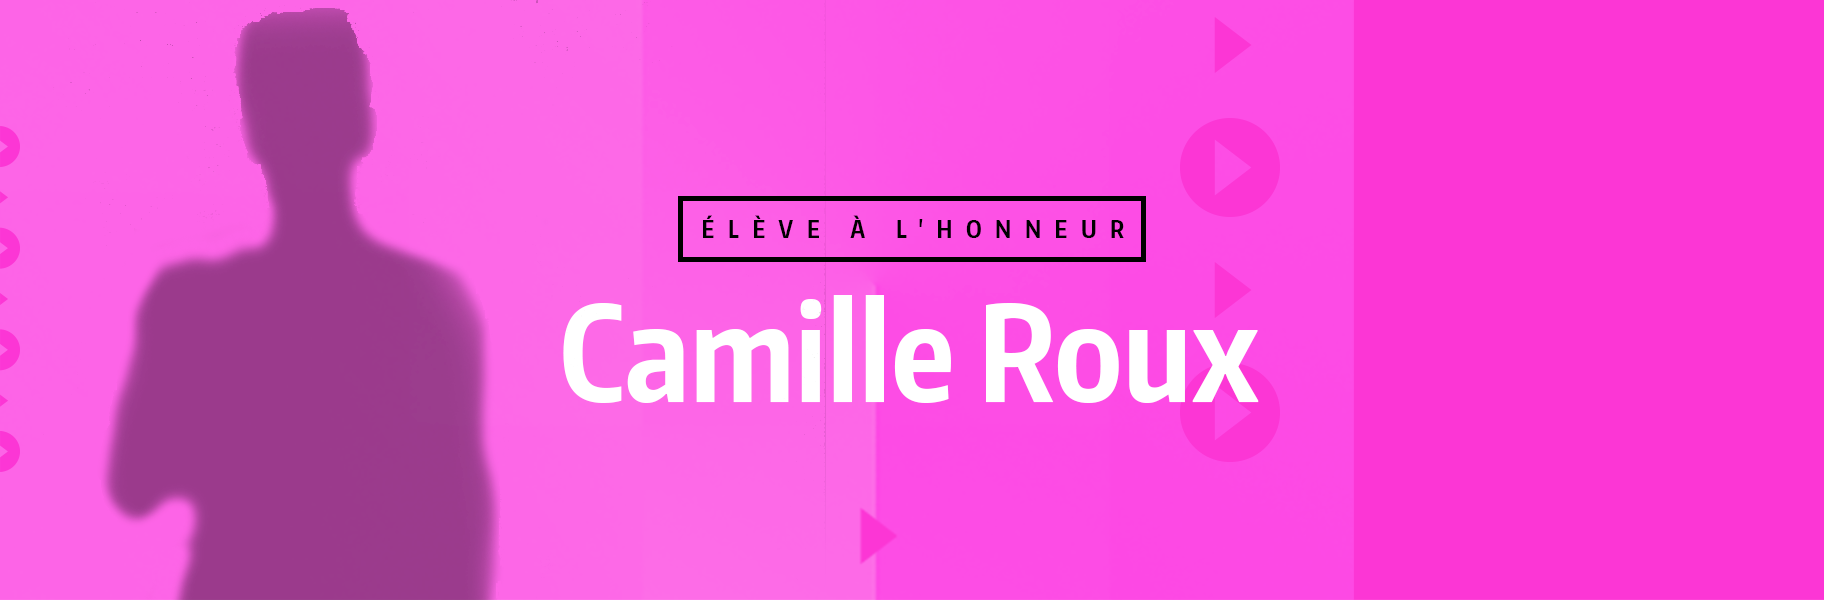 Élève à l'honneur - Camille Roux